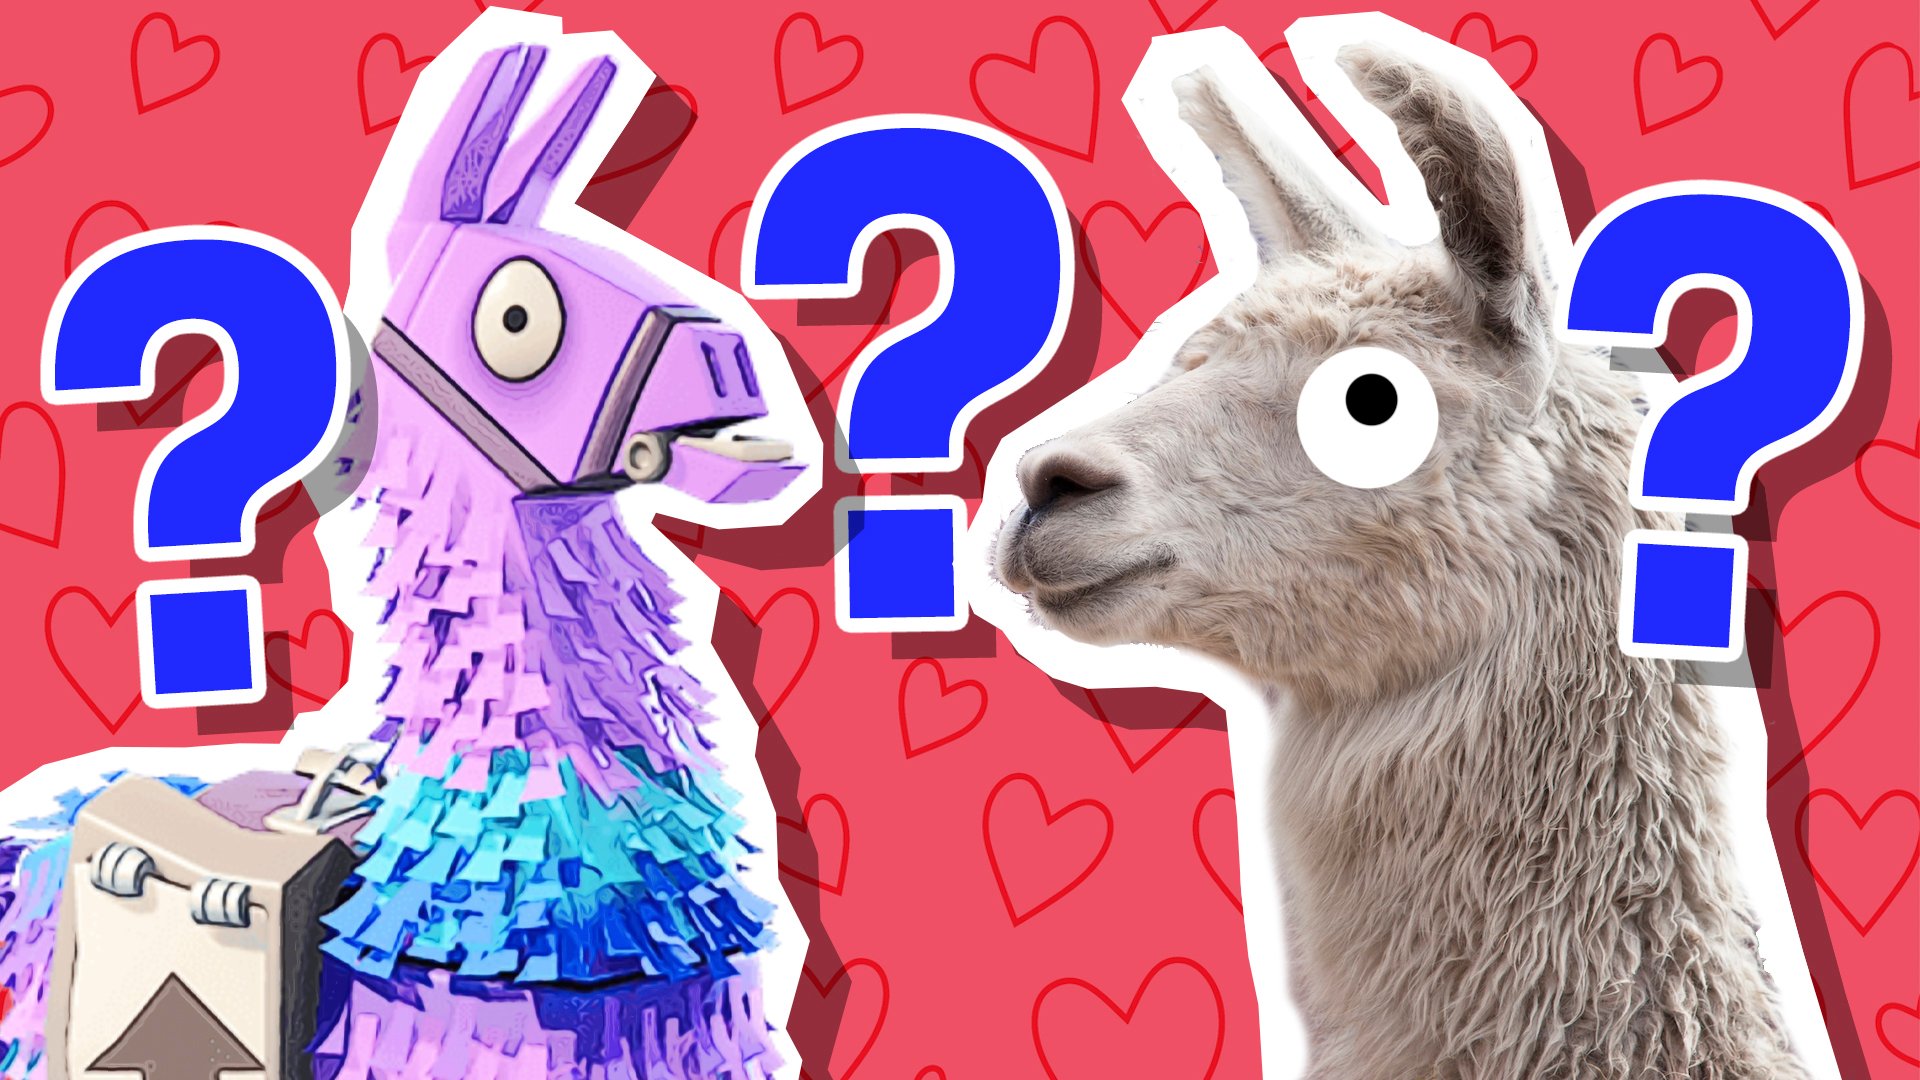 A Fortnite llama and a regular llama